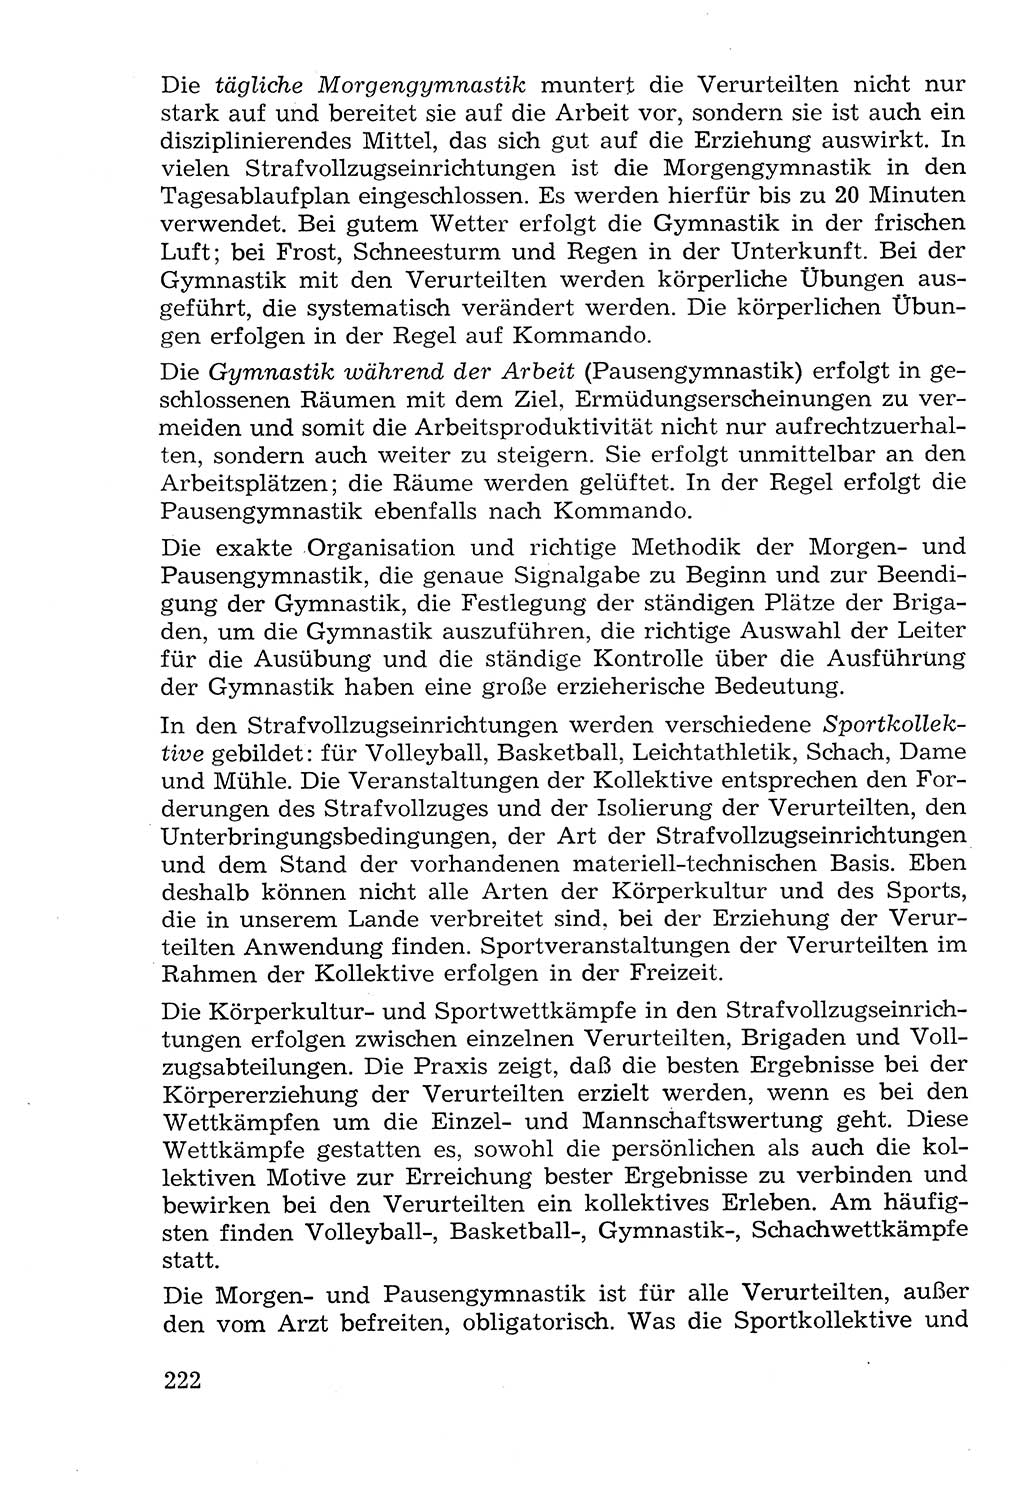 Lehrbuch der Strafvollzugspädagogik [Deutsche Demokratische Republik (DDR)] 1969, Seite 222 (Lb. SV-Pd. DDR 1969, S. 222)